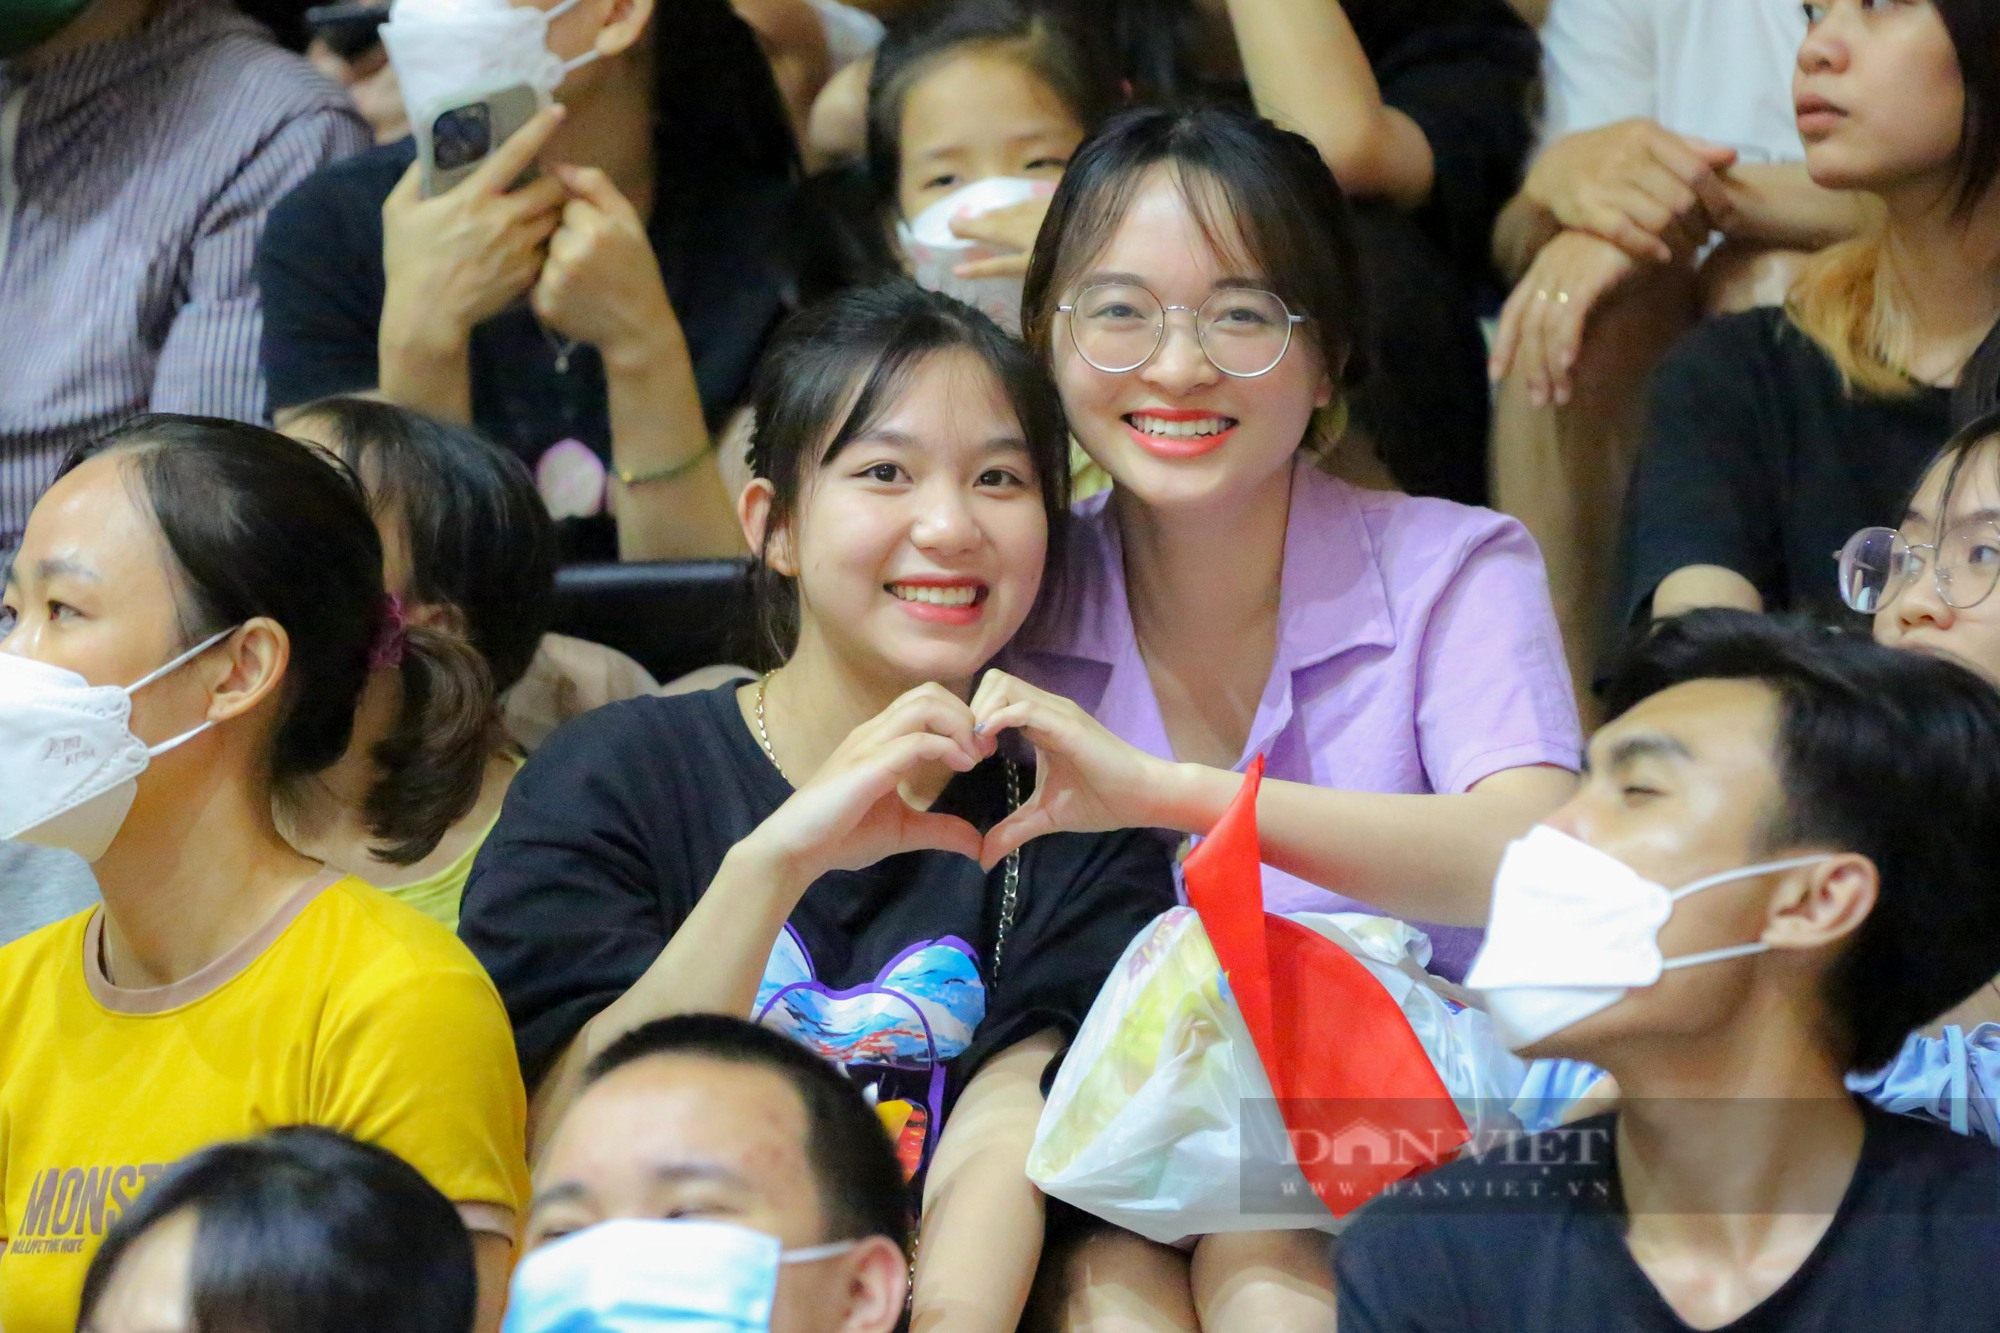 Dàn hot girl cổ vũ cực nhiệt trong chiến thắng của đội tuyển bóng rổ Việt Nam - Ảnh 3.